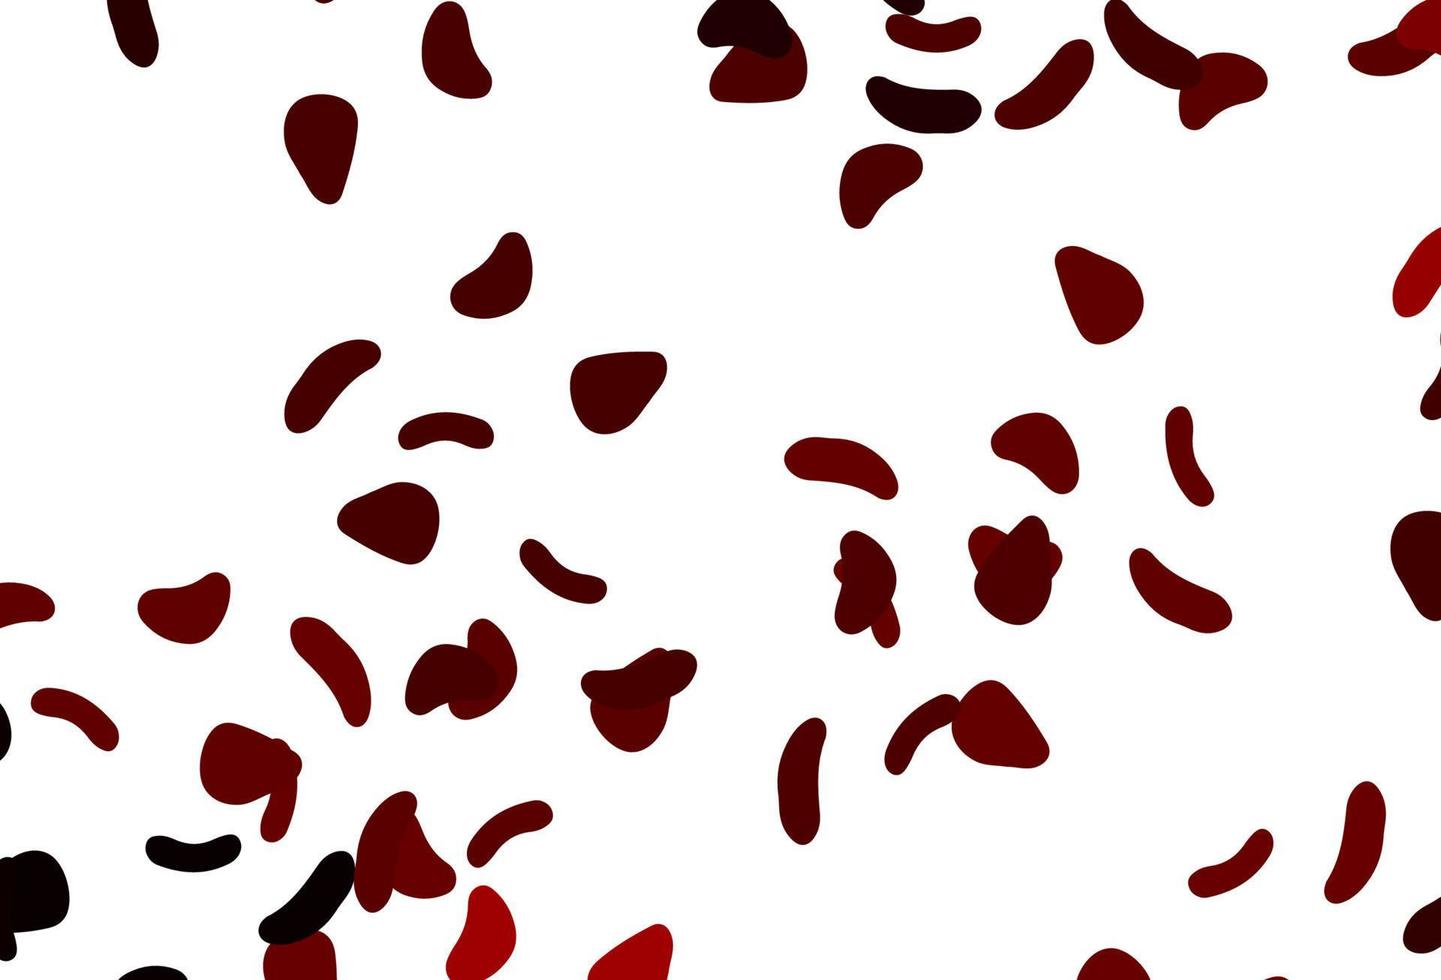 modello vettoriale rosso chiaro con forme caotiche.